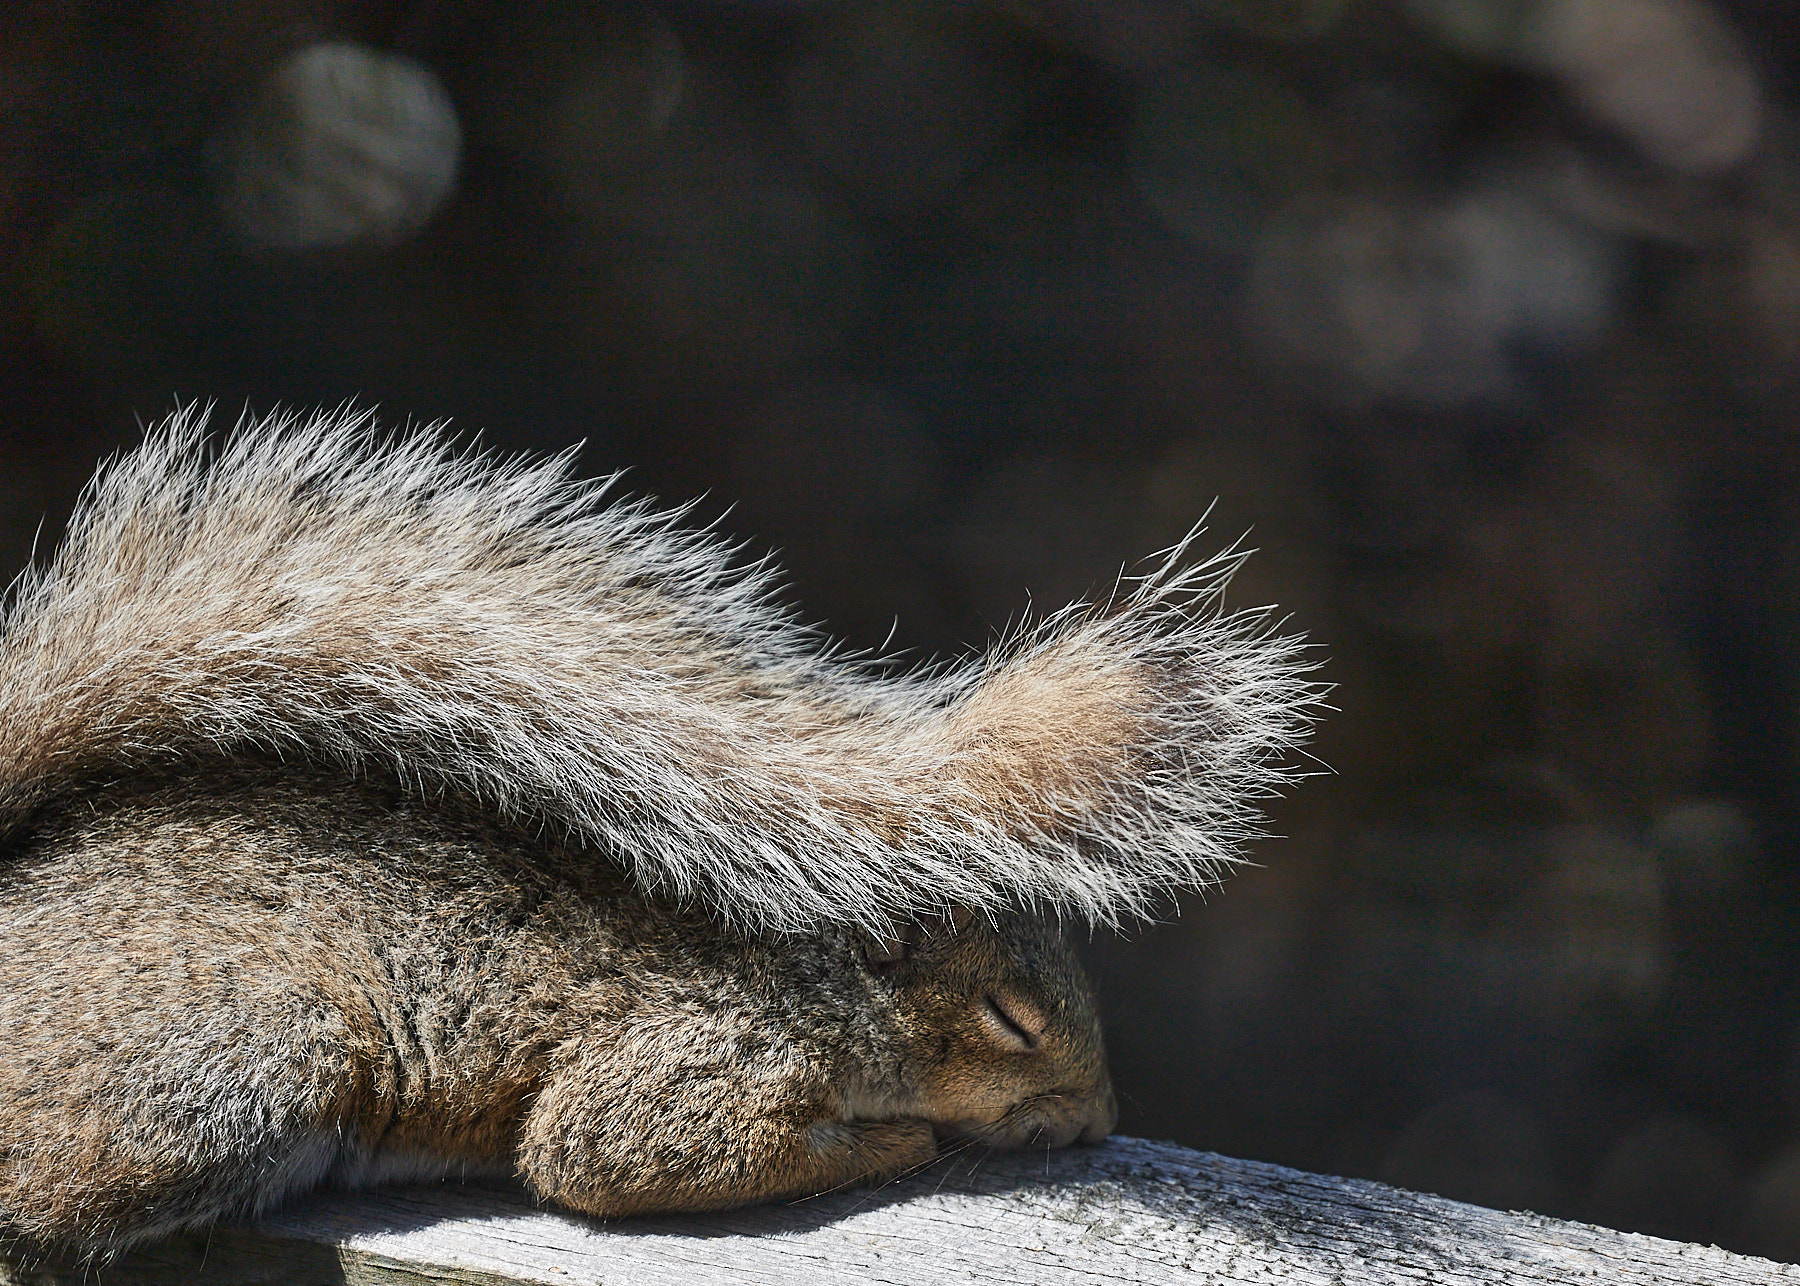 COVID squirrel naps